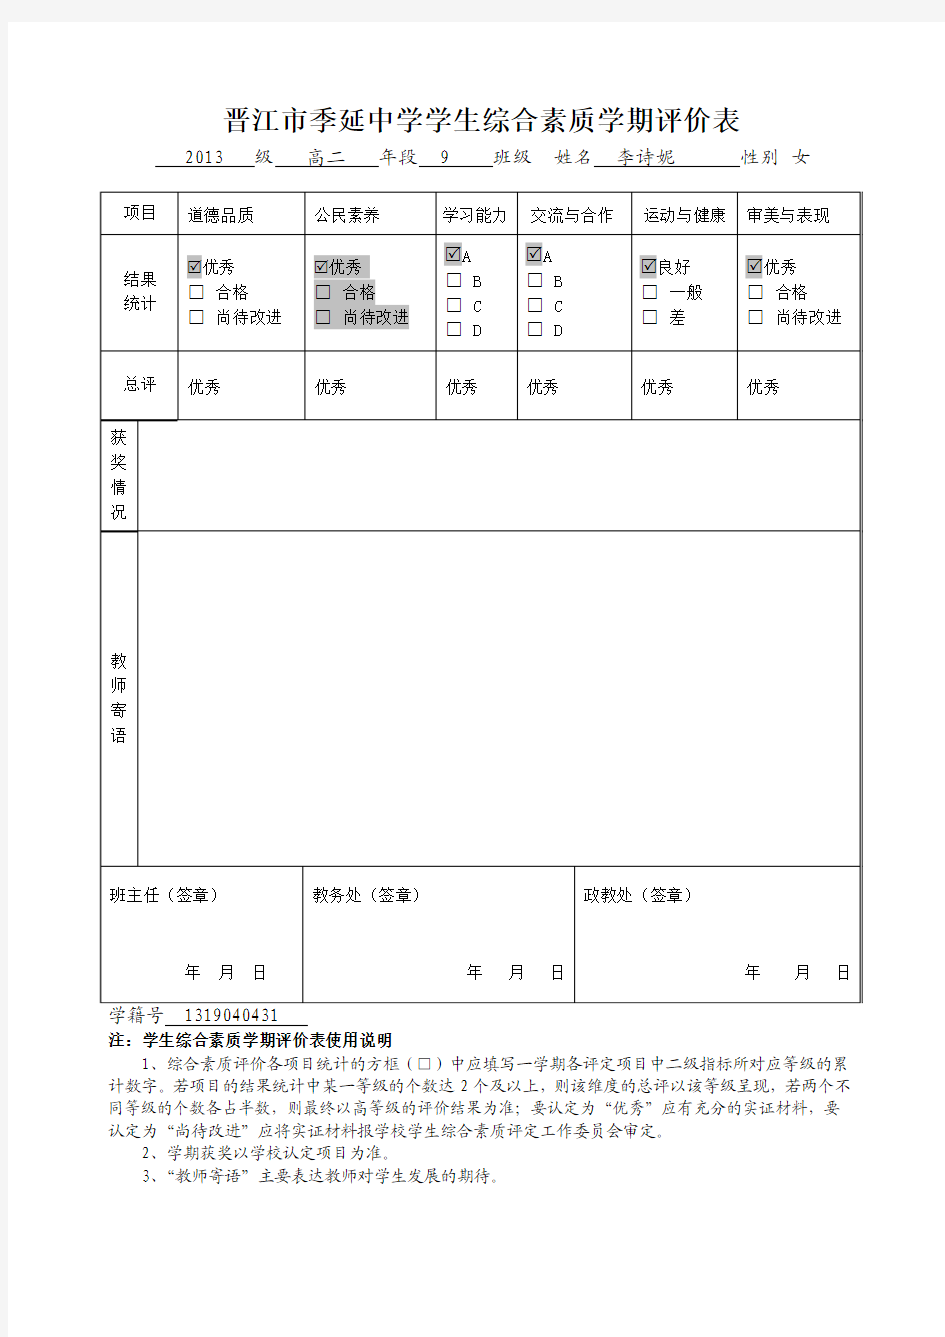 晋江市季延中学学生综合素质学期评价表 (3)